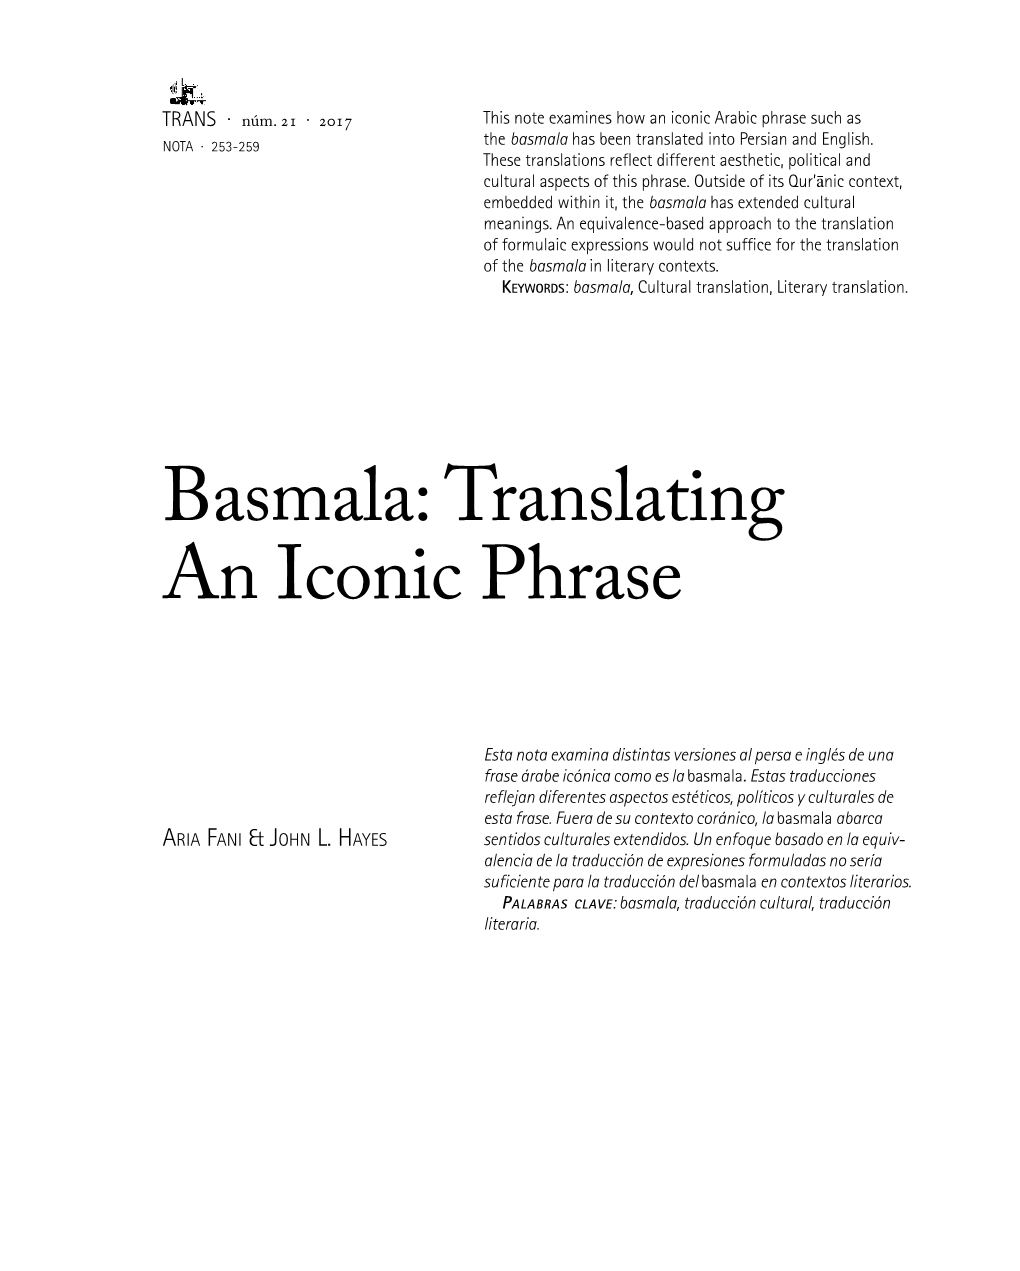 Basmala: Translating an Iconic Phrase